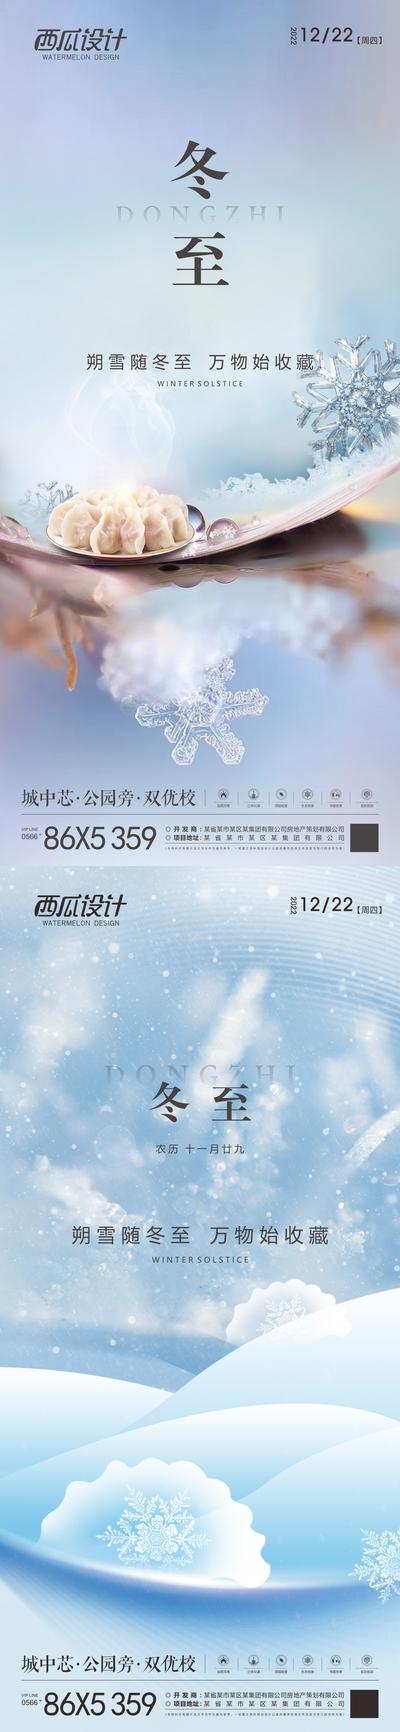 南门网 海报 房地产 二十四节气 冬至 饺子 雪花 中式